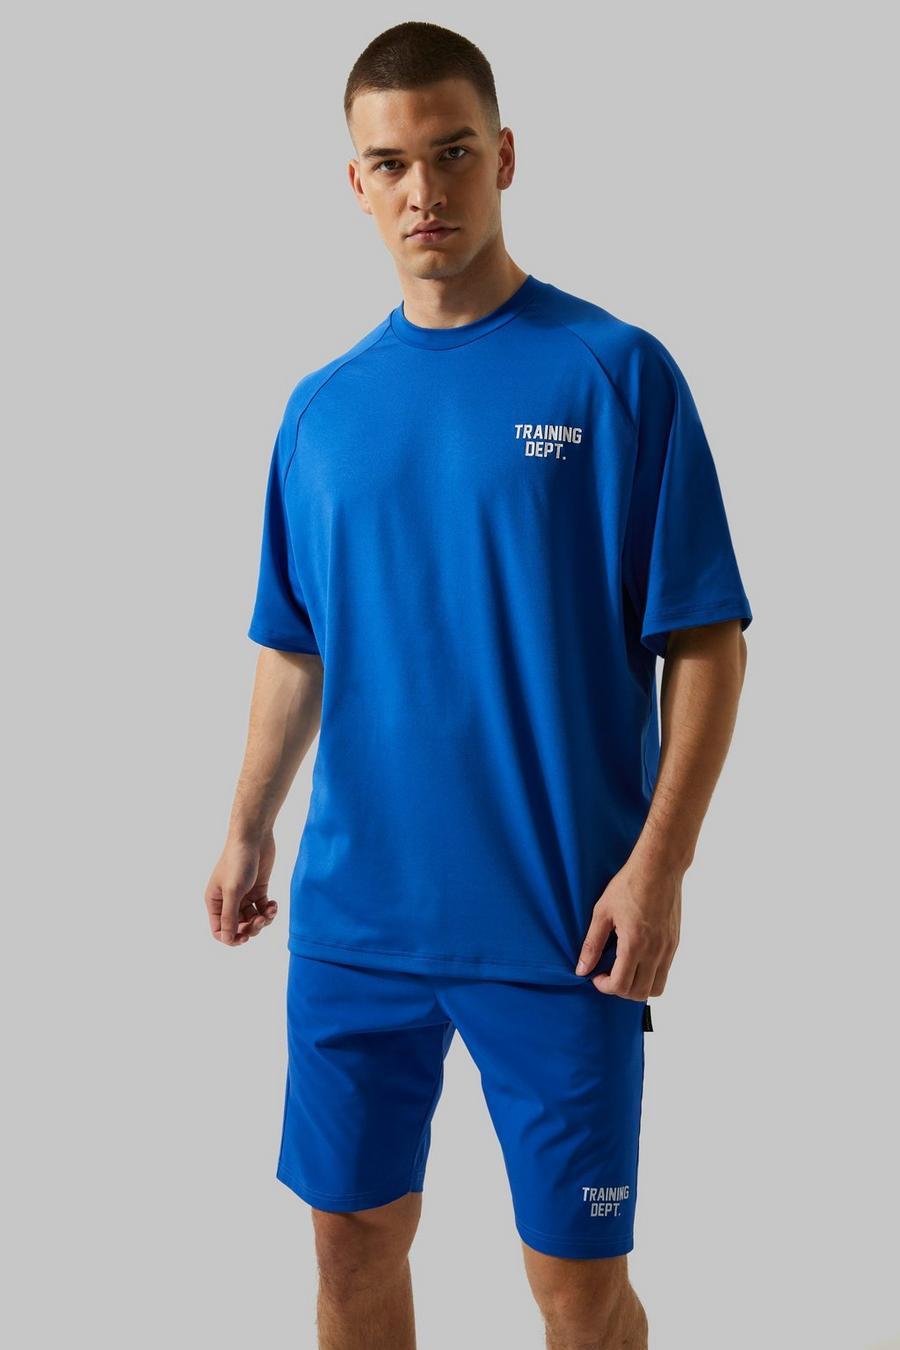 Cobalt bleu Tall Boxy Man Active Training Dept T-Shirt image number 1